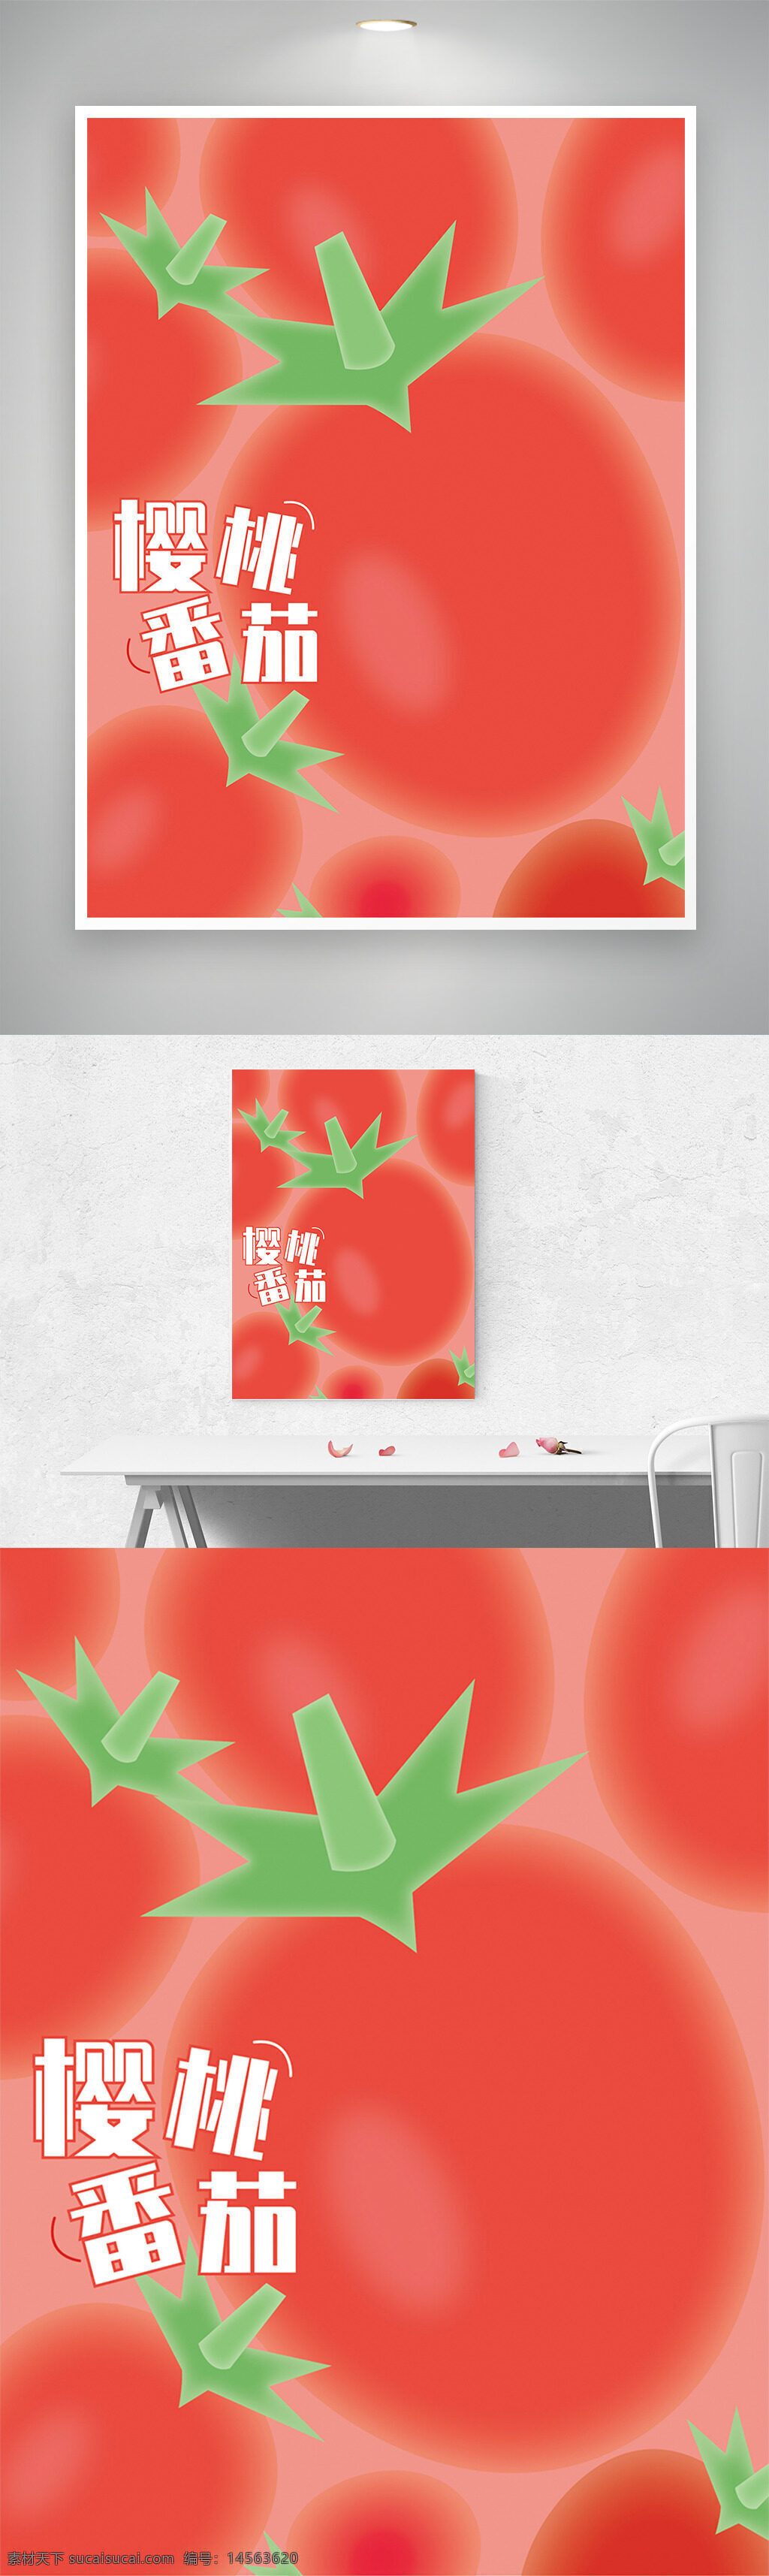 红色 樱桃 番茄 矢量 美食 弥散光 插画海报